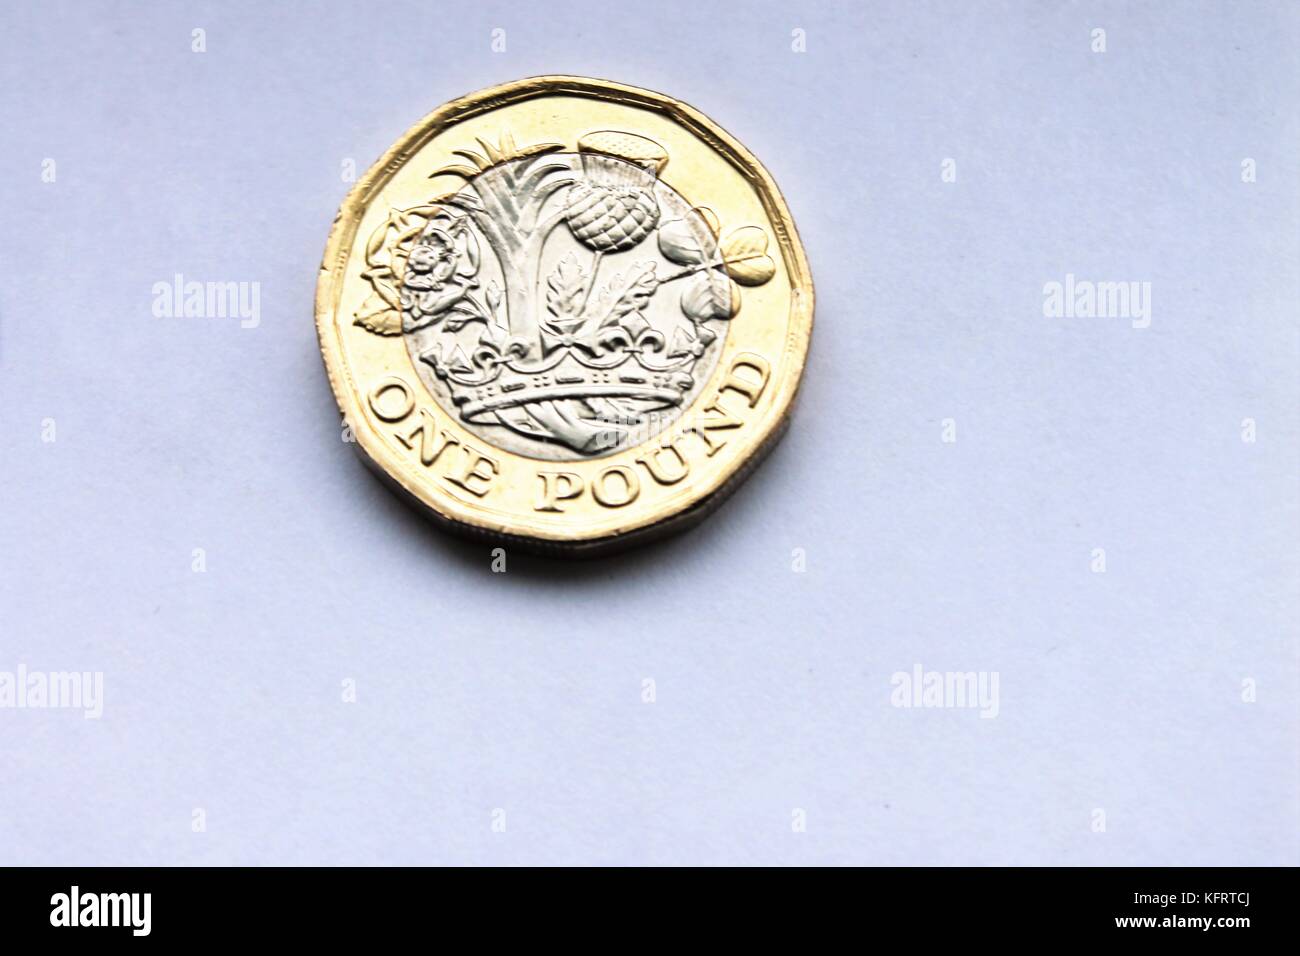 Nuovo pound £ 1 gettone design 2016 , 12 lato design facciata Queen Elizabeth su stock di monete, foto, fotografia, immagine, foto, Foto Stock